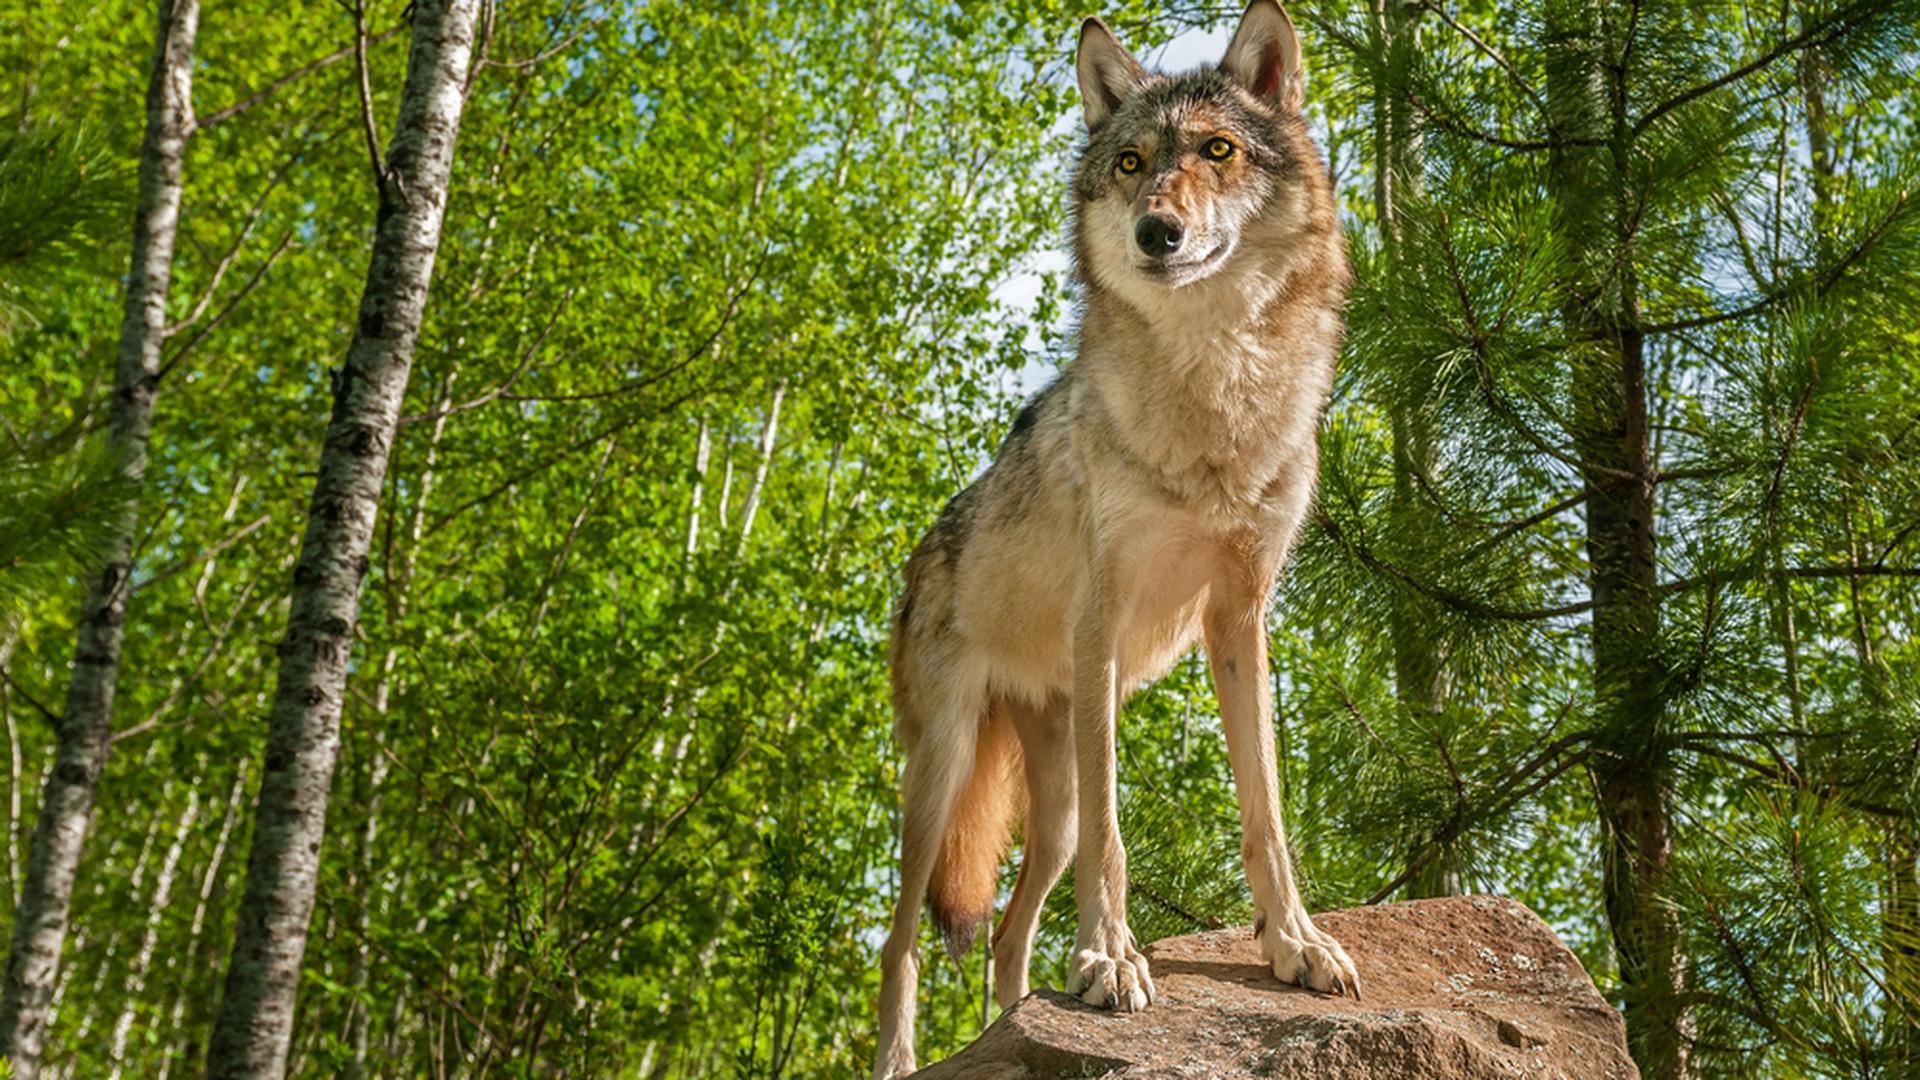 Le loup repéré au Luxembourg est un loup gris (canis lupus).